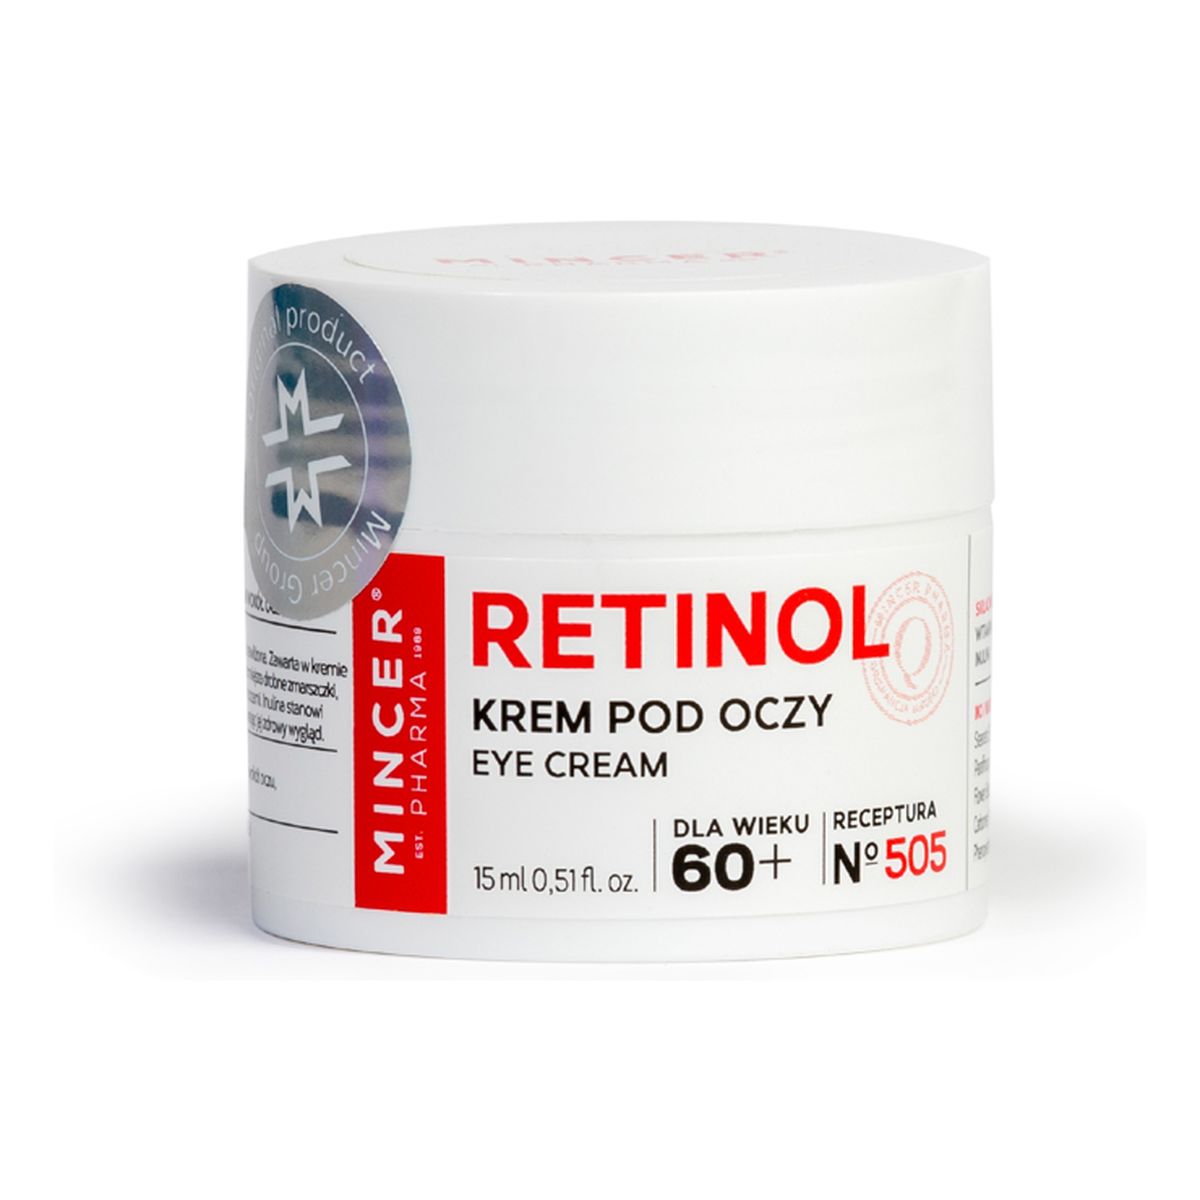 Mincer Pharma Retinol Krem pod oczy No 505 15ml